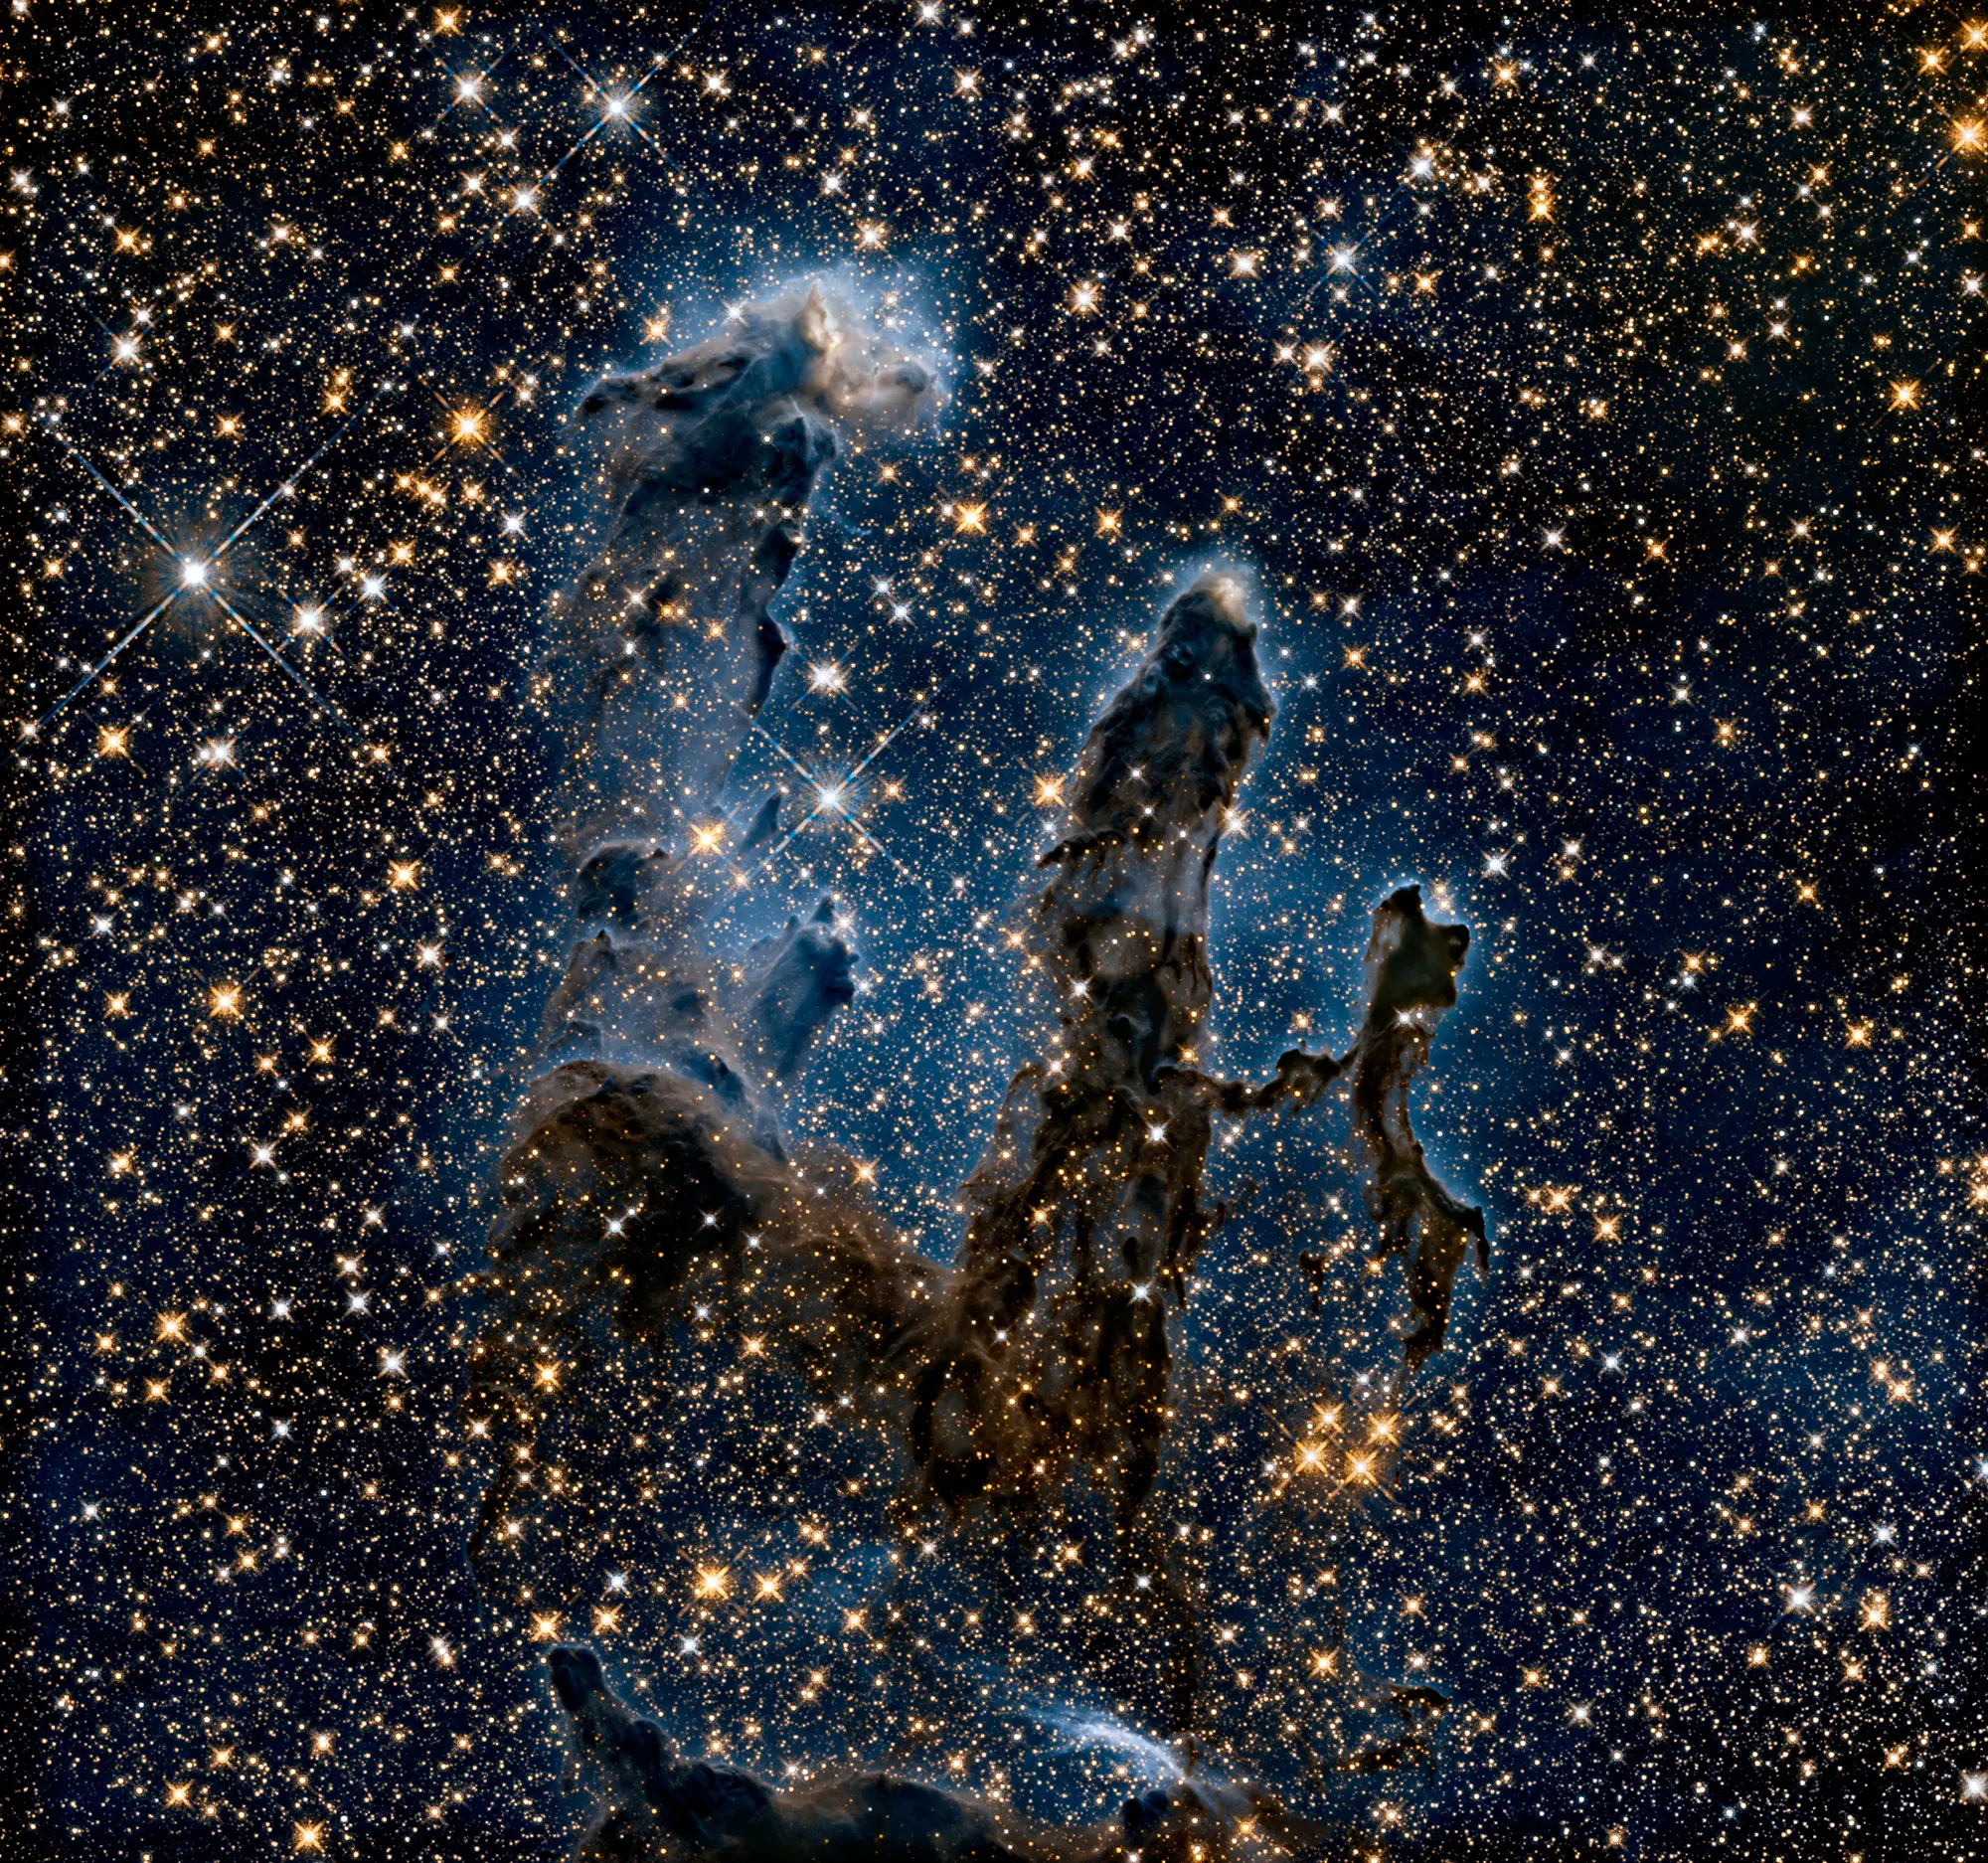 5 imagens impressionantes captadas pelo telescópio Hubble